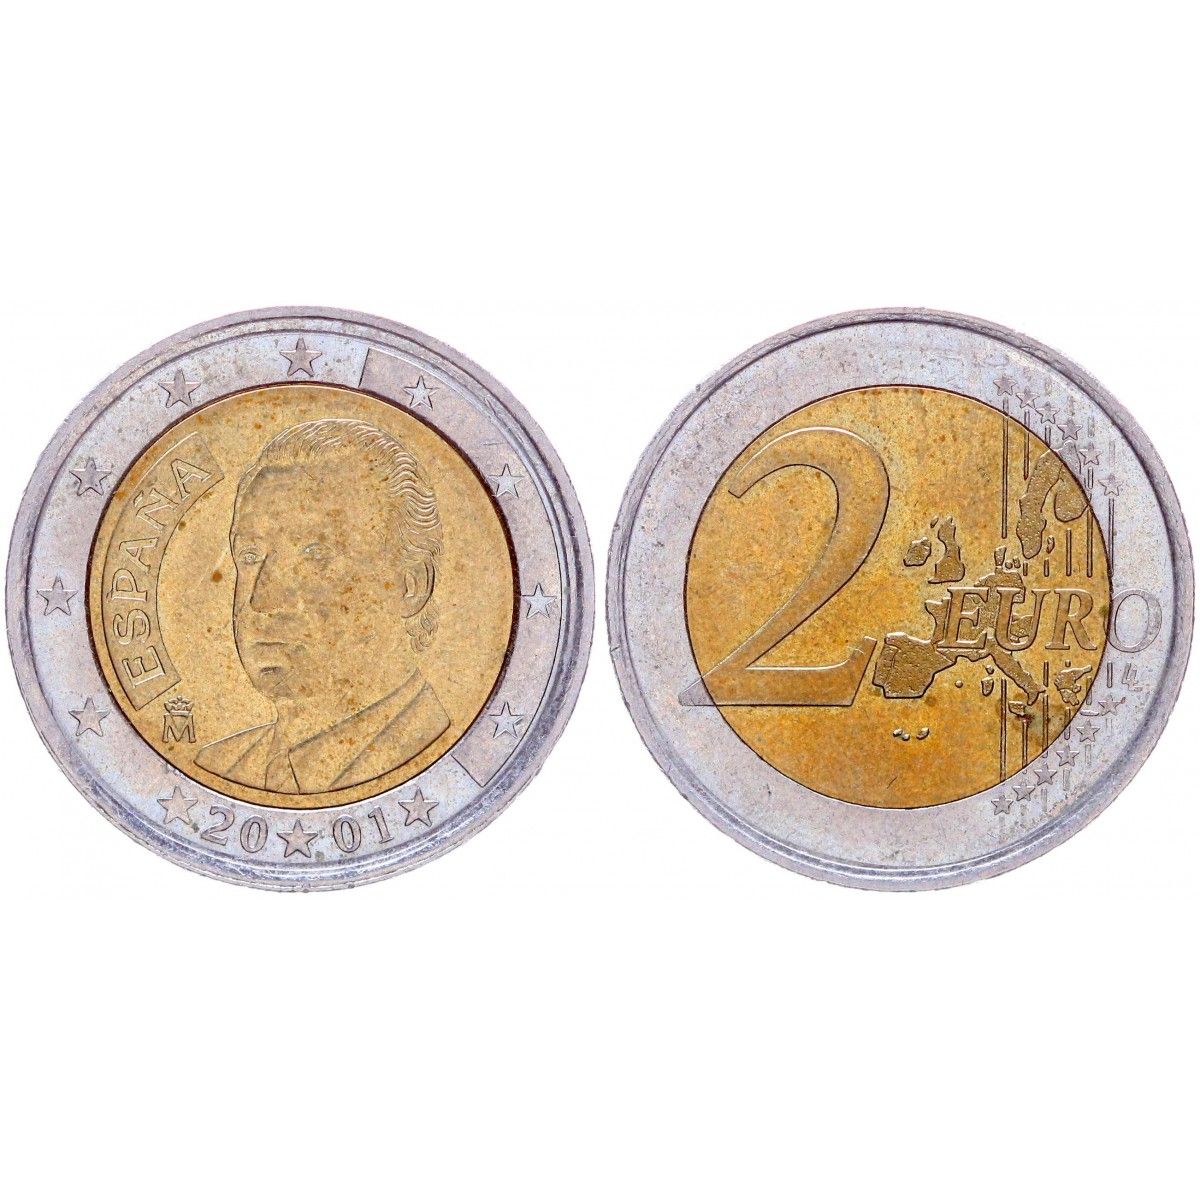 Германия 2 евро 2007 Мекленбург f. Германия 2 евро 2007 набор 5 монет пруфф Мекленбург-передняя Померания.. 2 Евро Кипр 2008. Испания 2 евро, 2009. Евро 2001 год